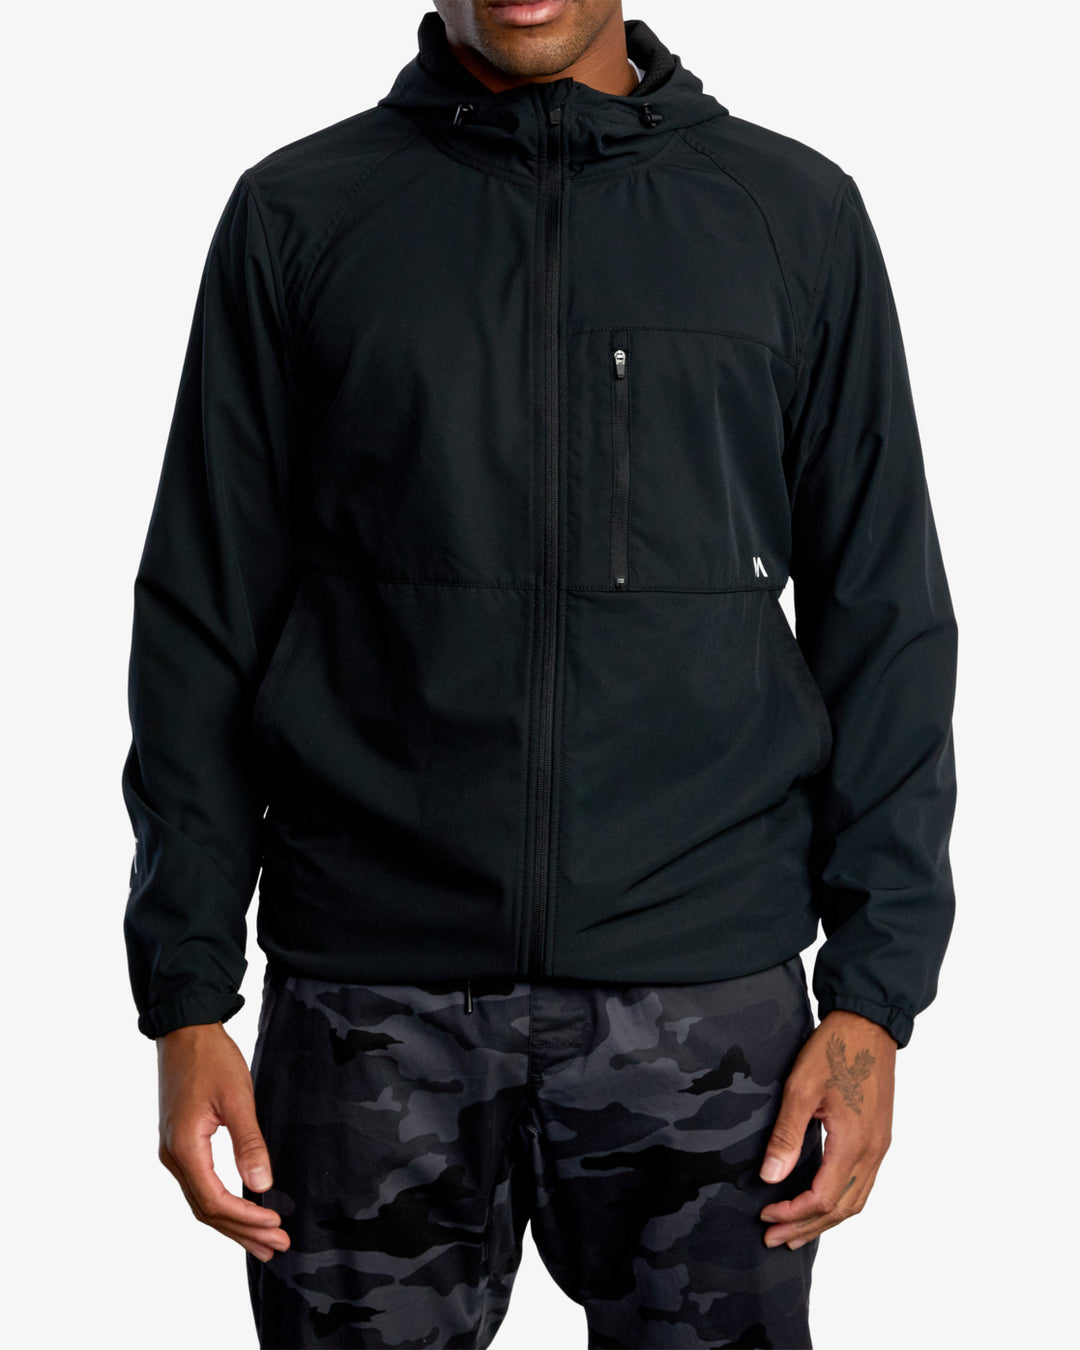 RVCA Yogger Zip-Up Hooded Jacket Ii - Black - Sun Diego Boardshop